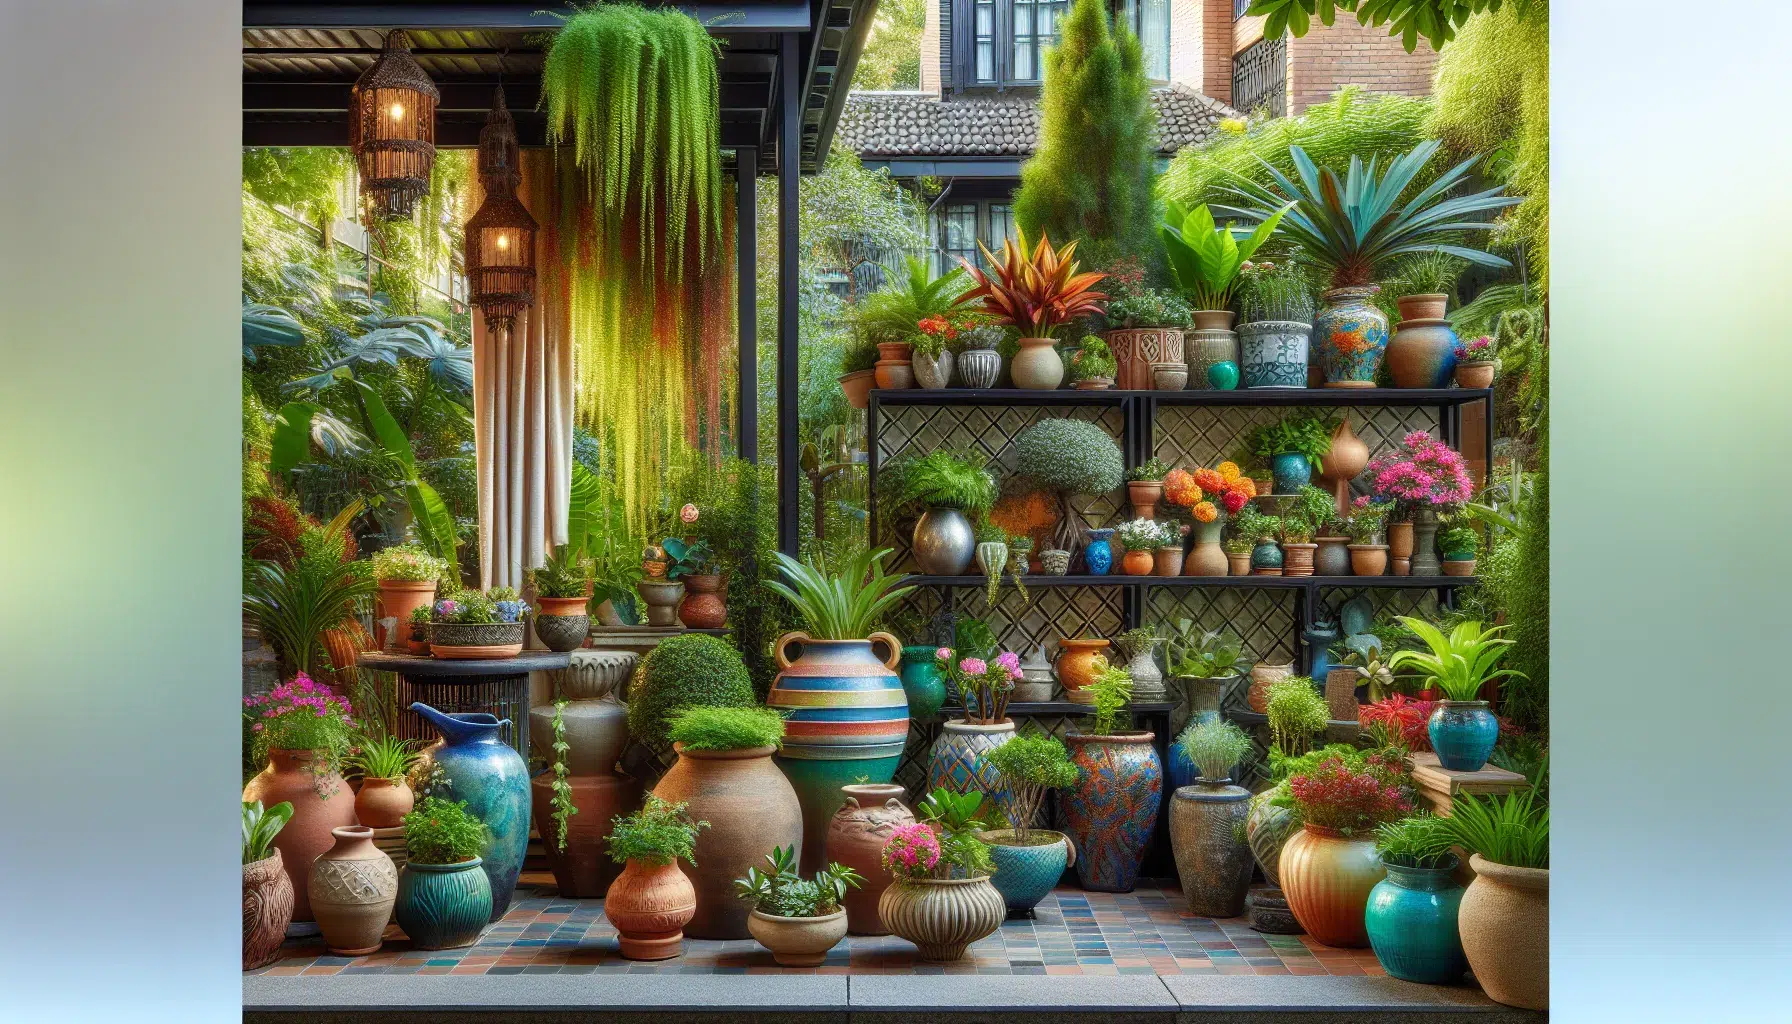 Terraza al aire libre decorada con plantas y macetas de colores vibrantes y variedad de formas y tamaños.